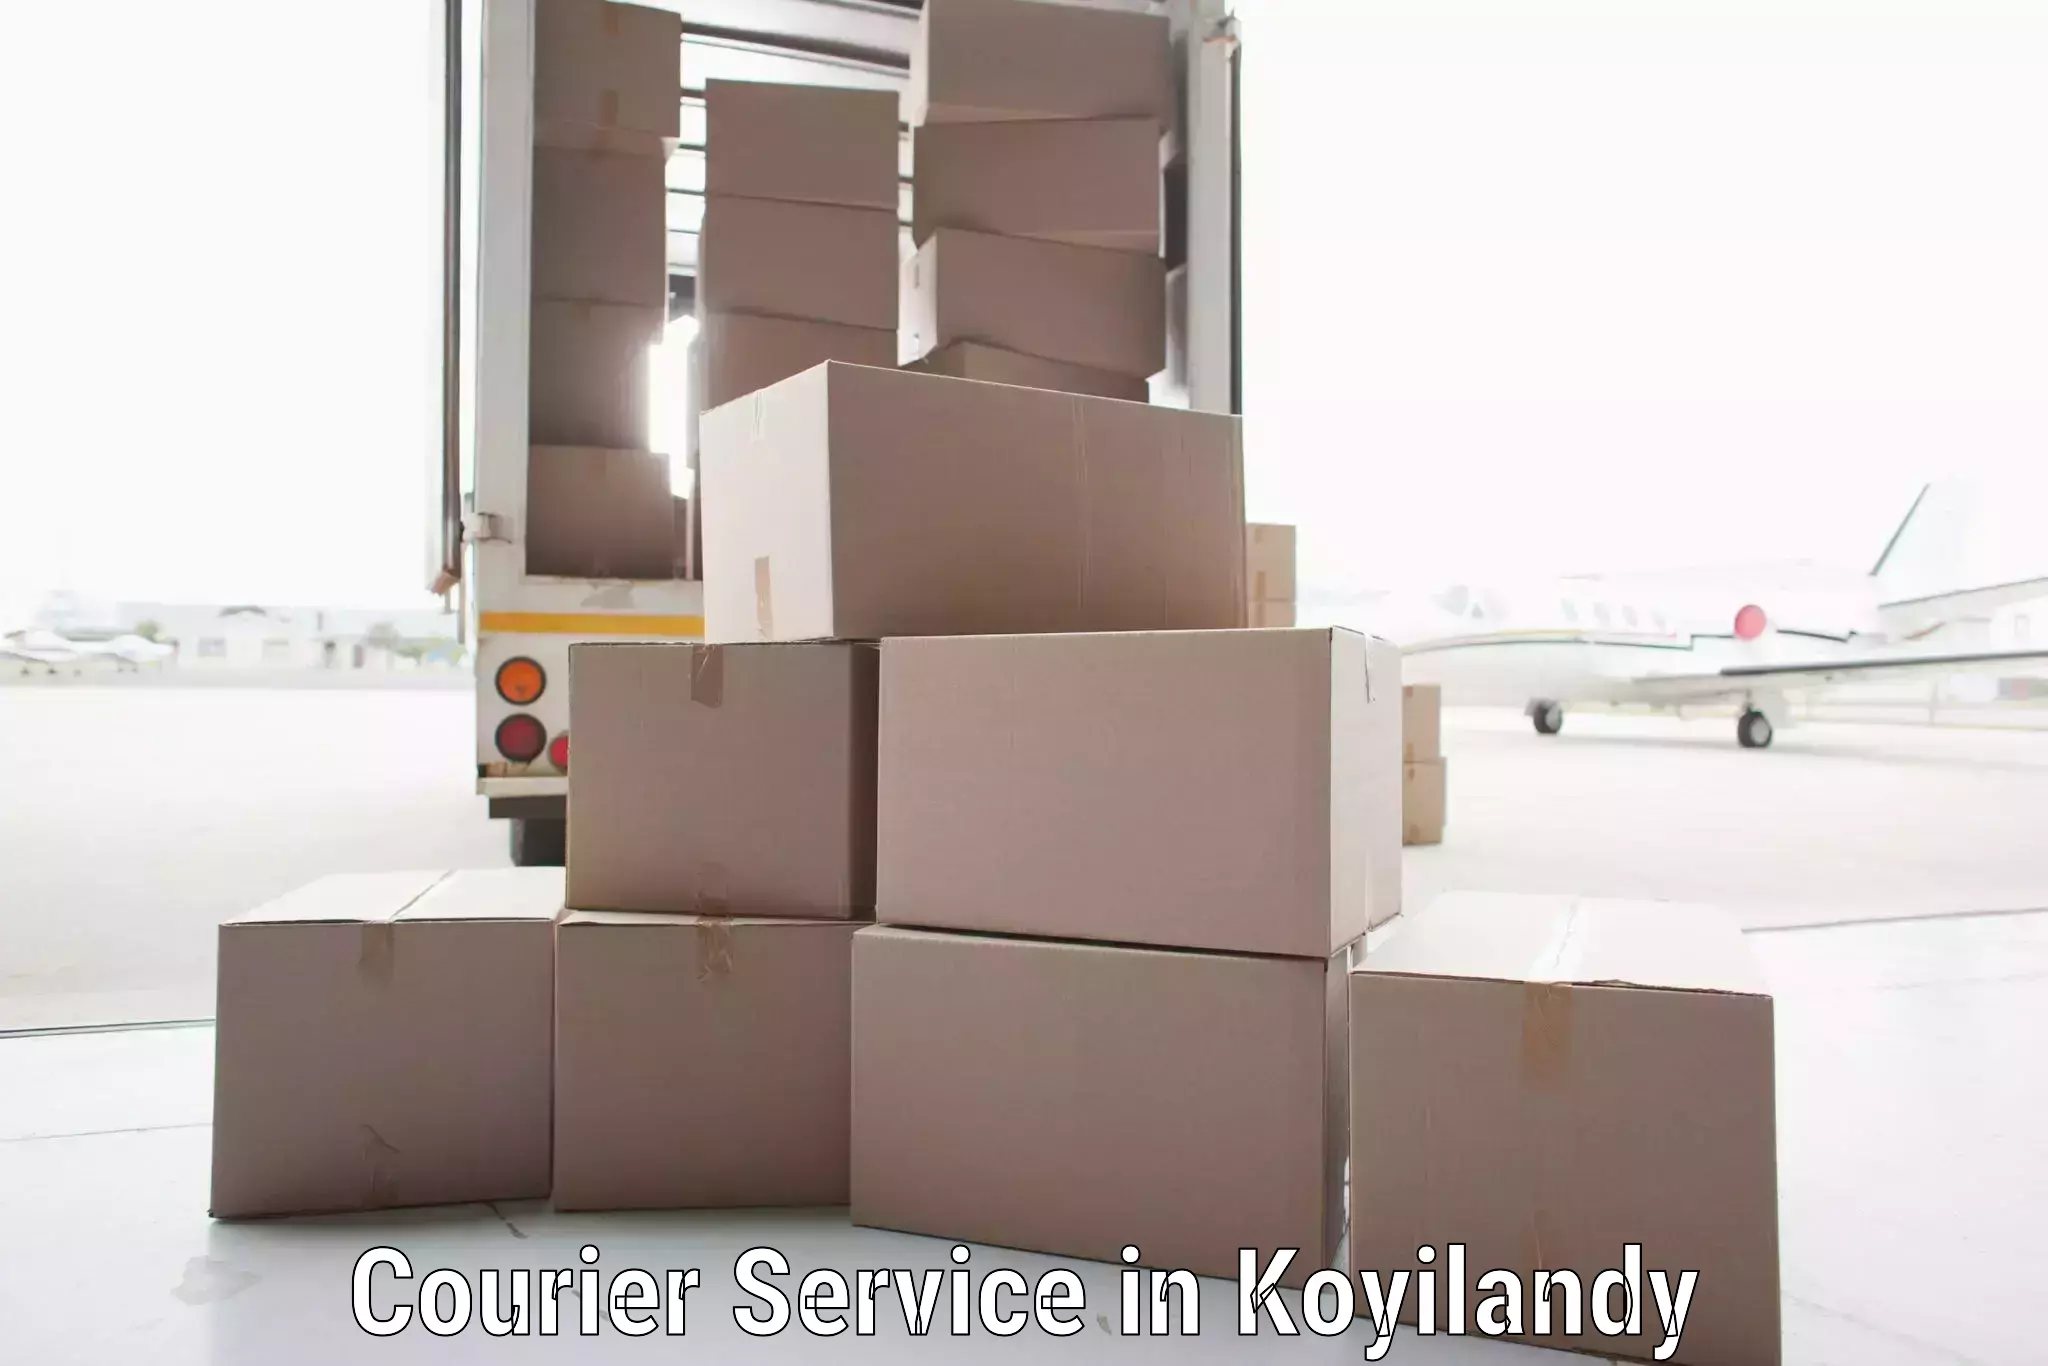 Efficient parcel service in Koyilandy